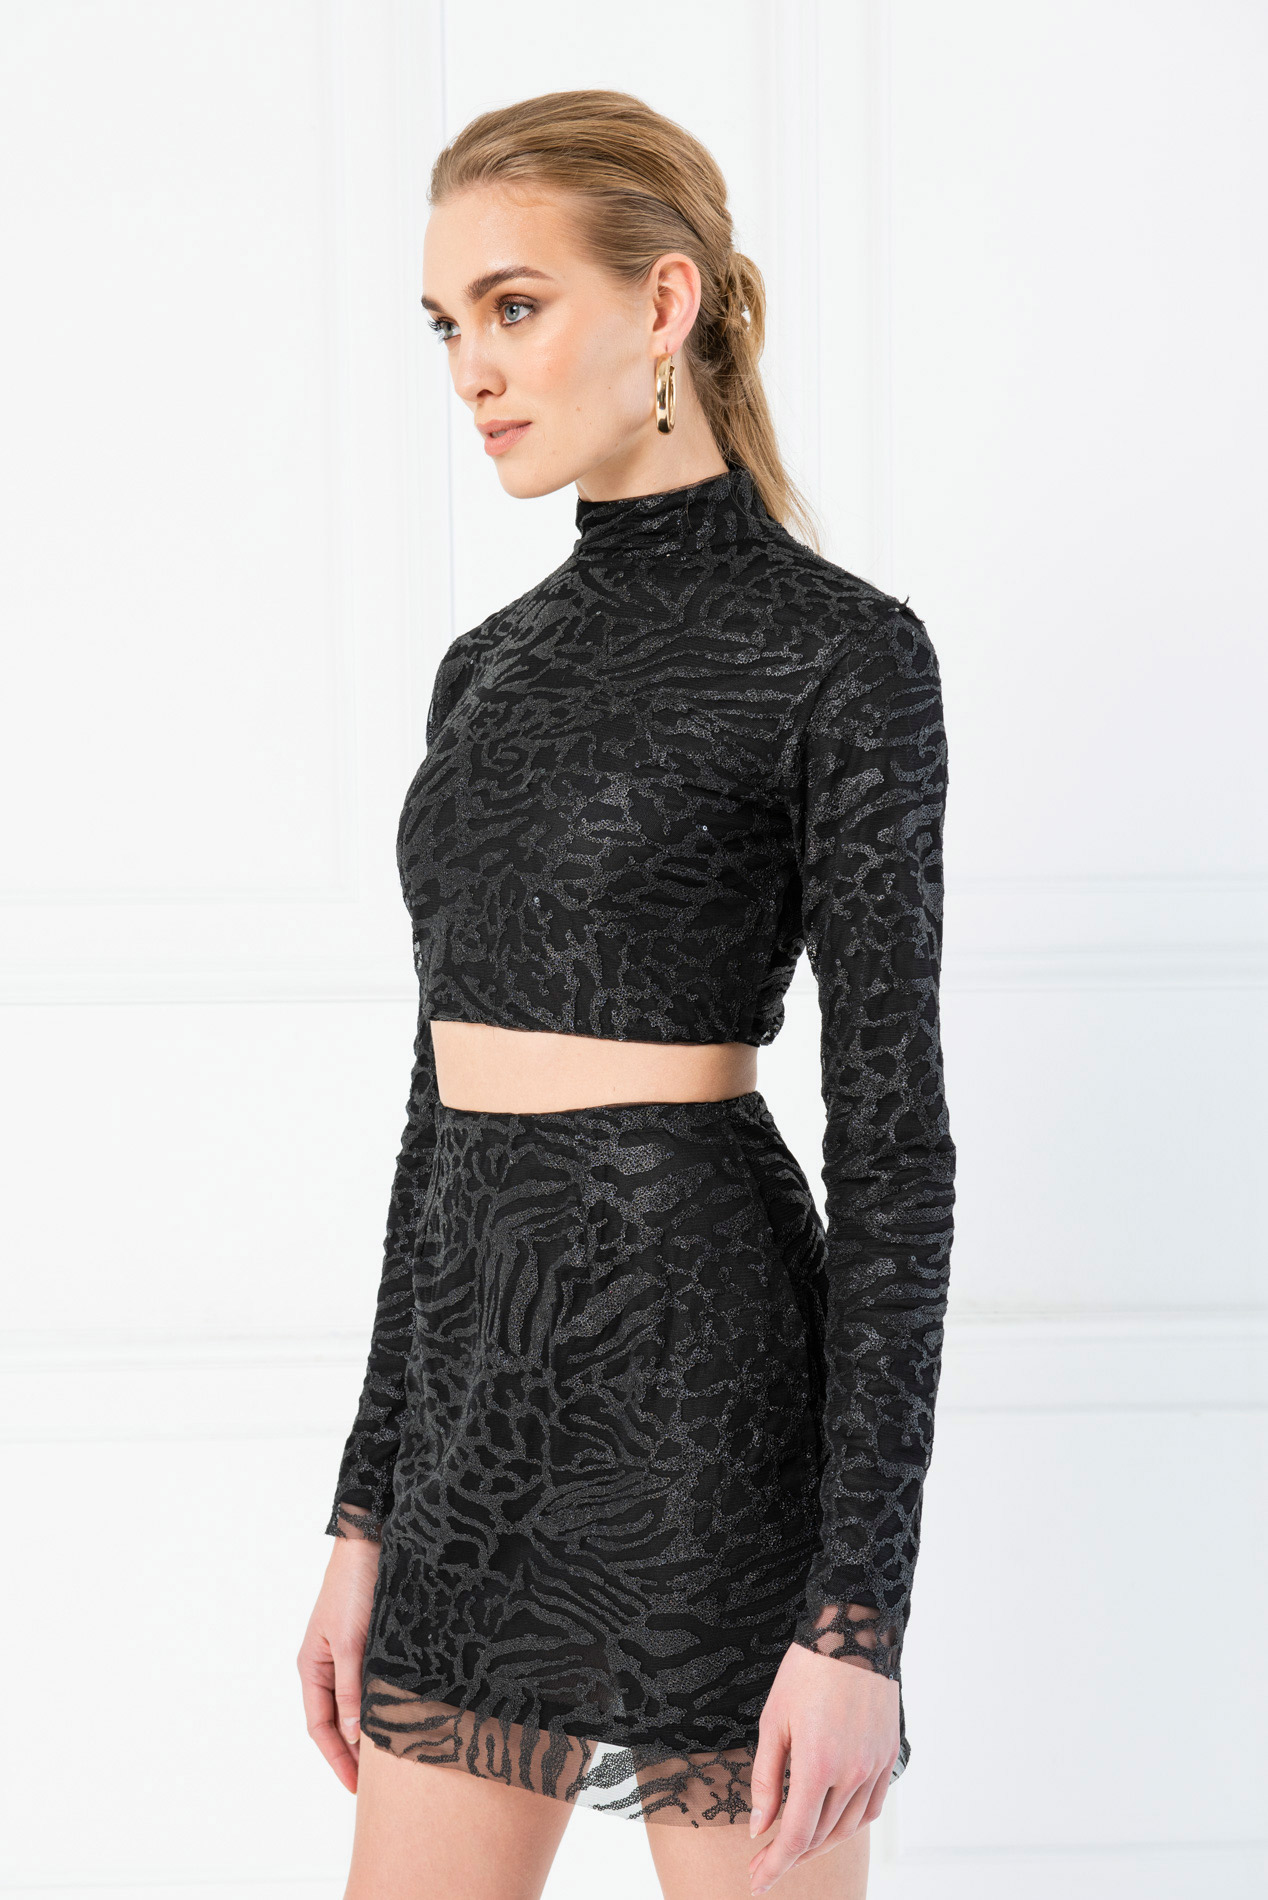 Black Sequin Crop Top \u0026 Mini Skirt Set 